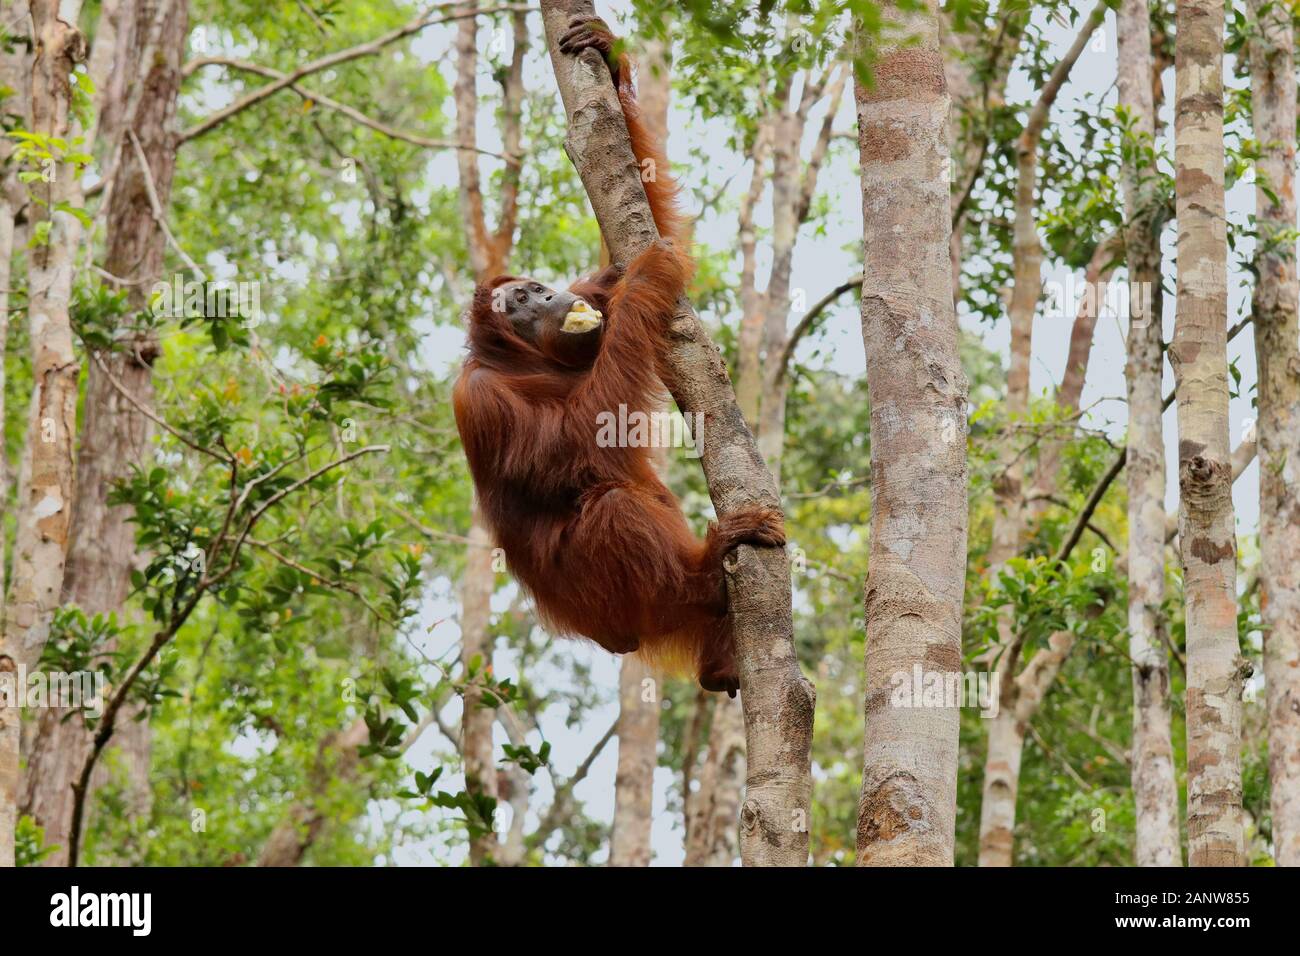 Wild degli Oranghi nella giungla di Bormeo godendo una banana Foto Stock